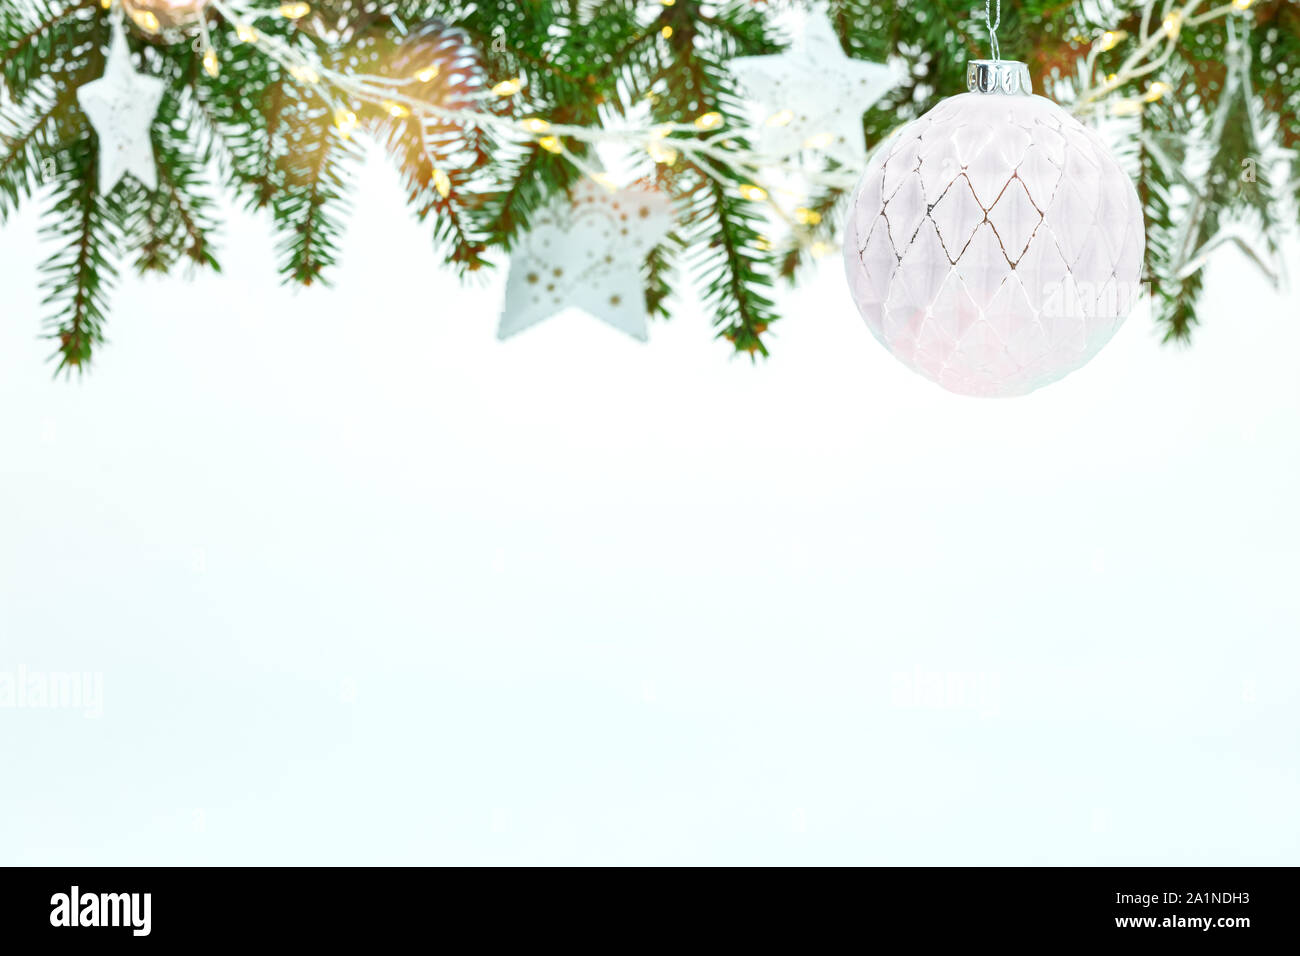 Schöne Weihnachten weißer Hintergrund mit grünen Tannenbaum Äste mit weißen Kugeln, Sternen und Lichtern geschmückt Stockfoto